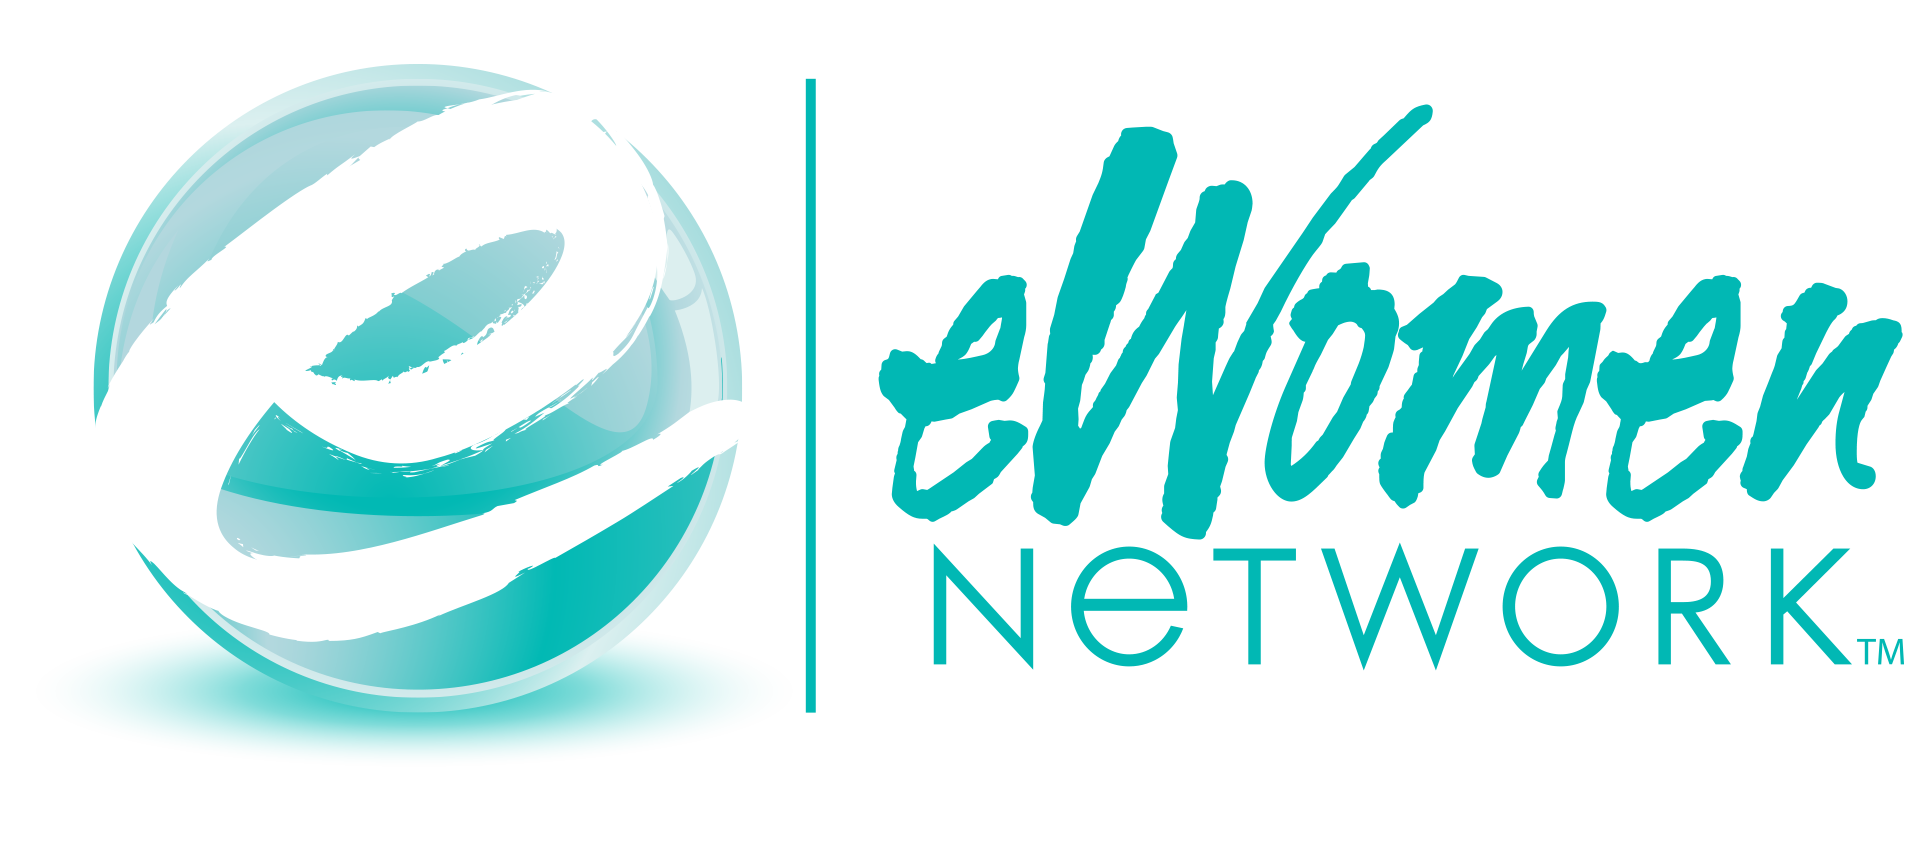 eWomen's business network (1).png